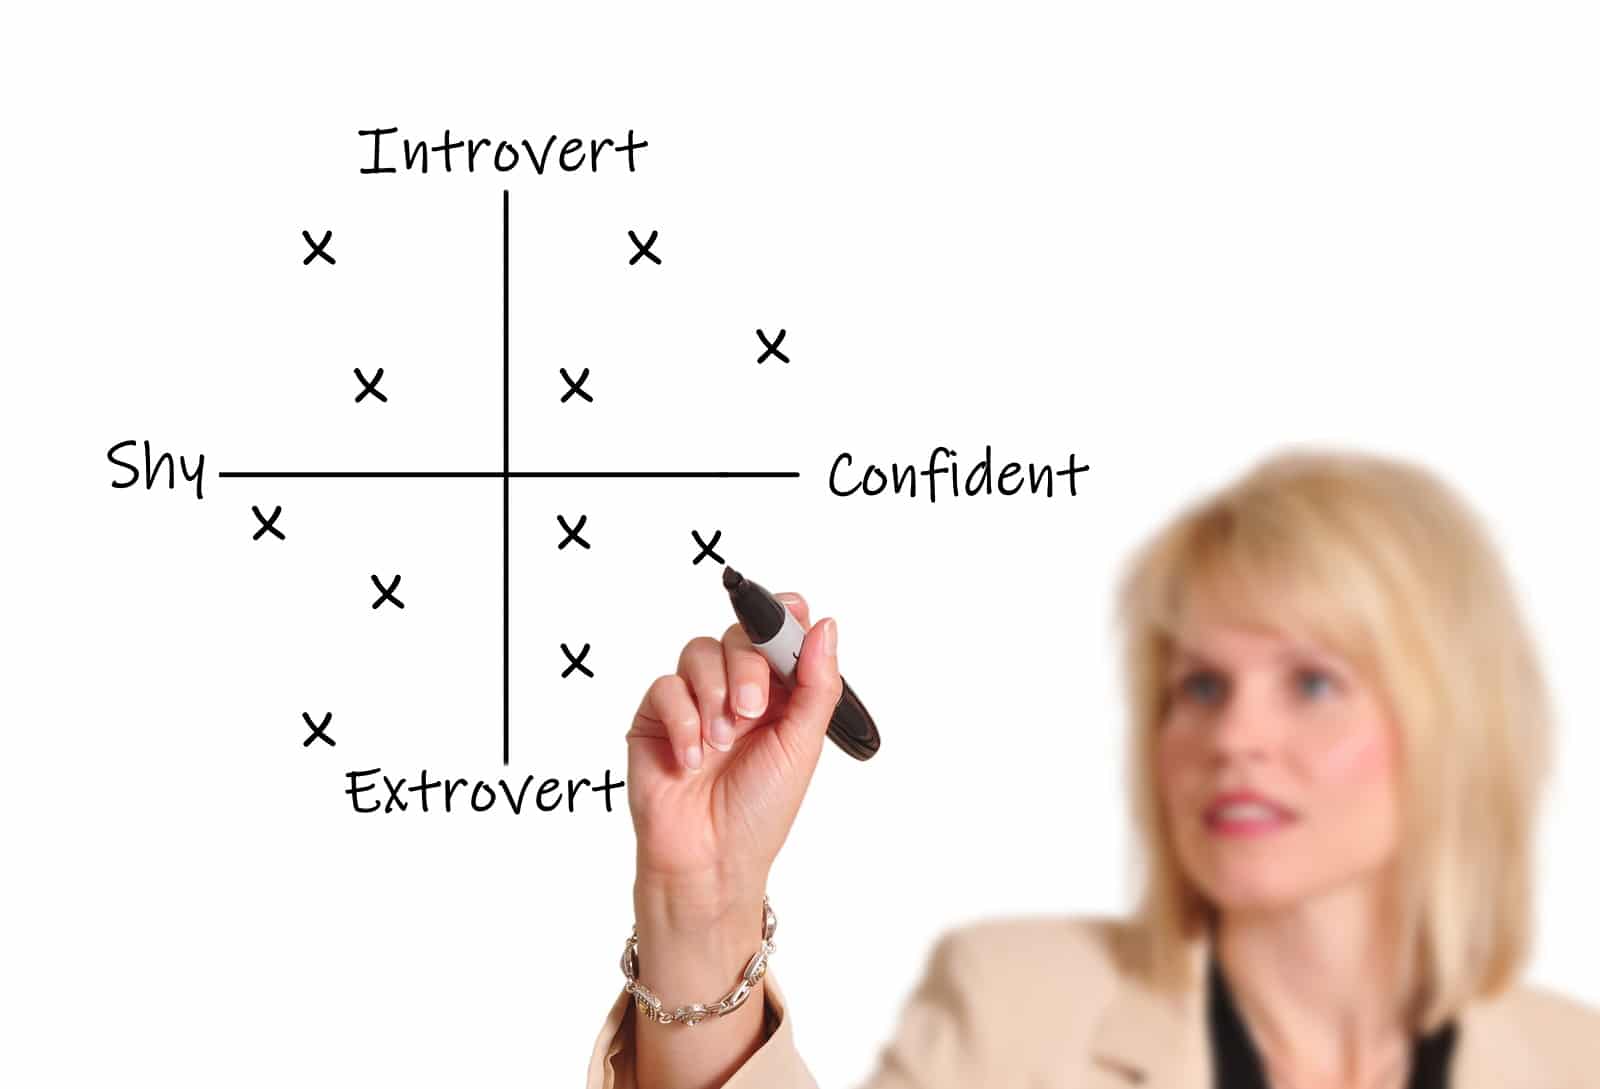 Introvert vs Extrovert